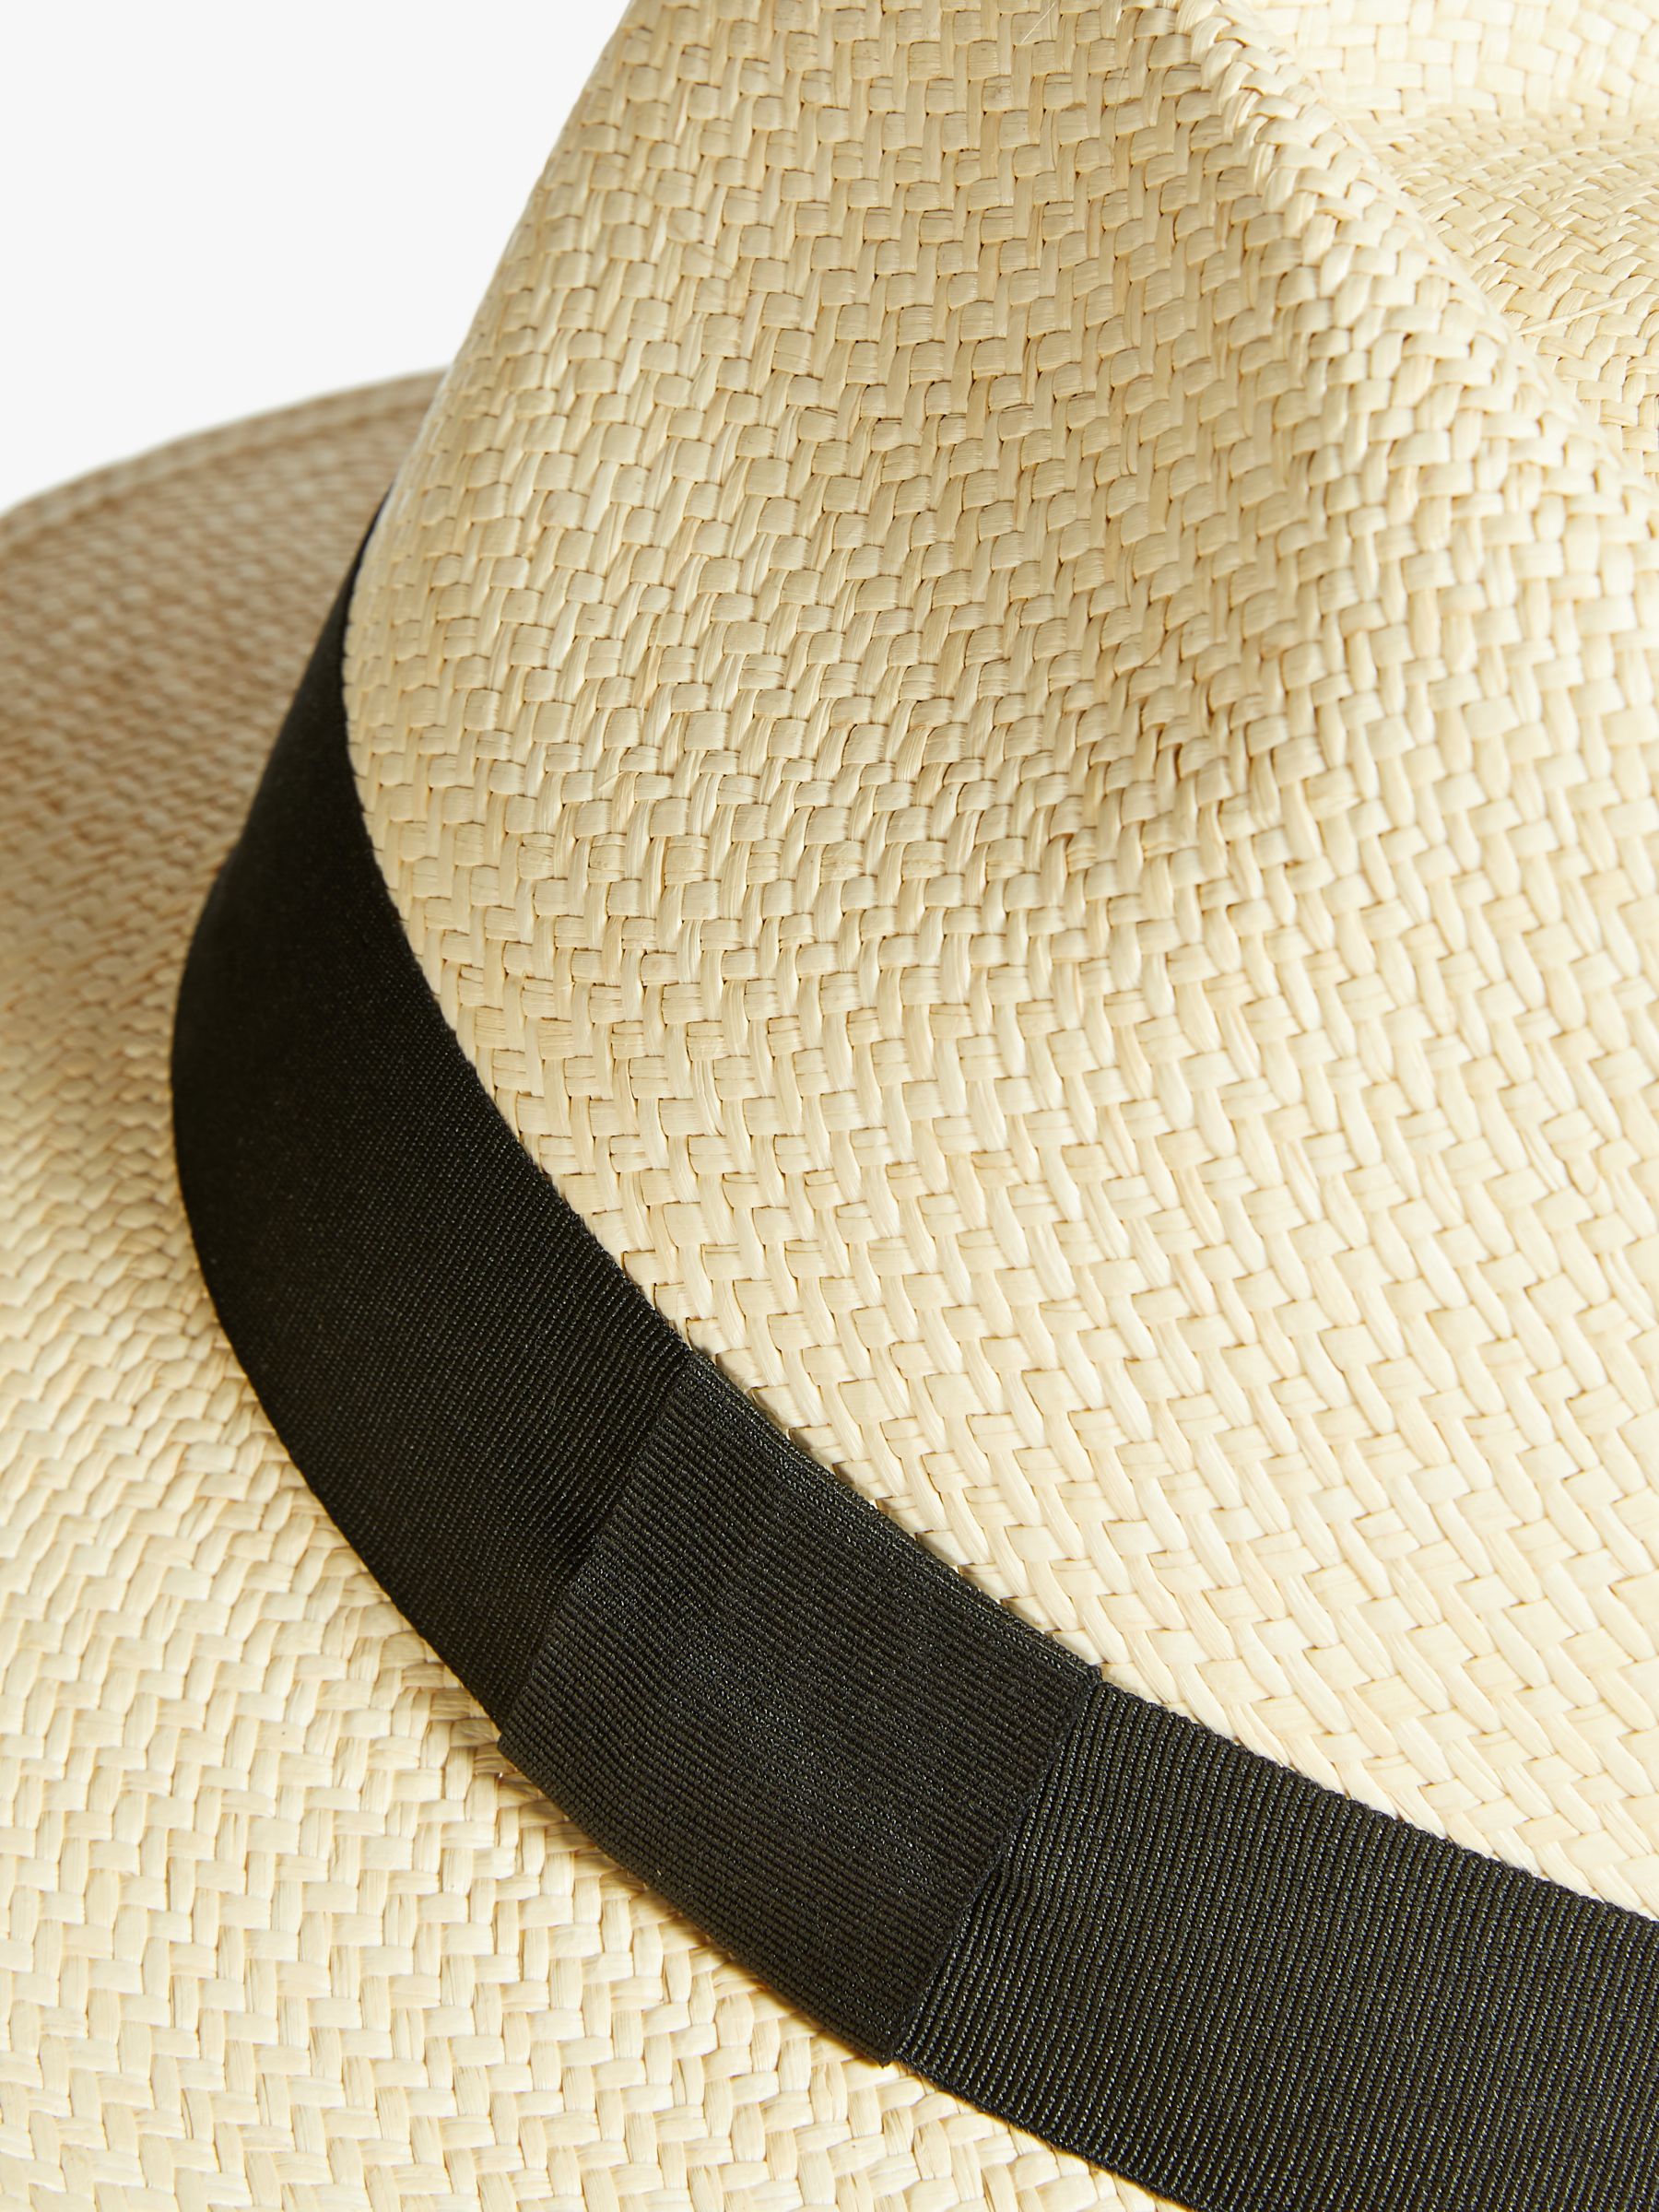 Christys' Mateo Panama Hat, Stone, M